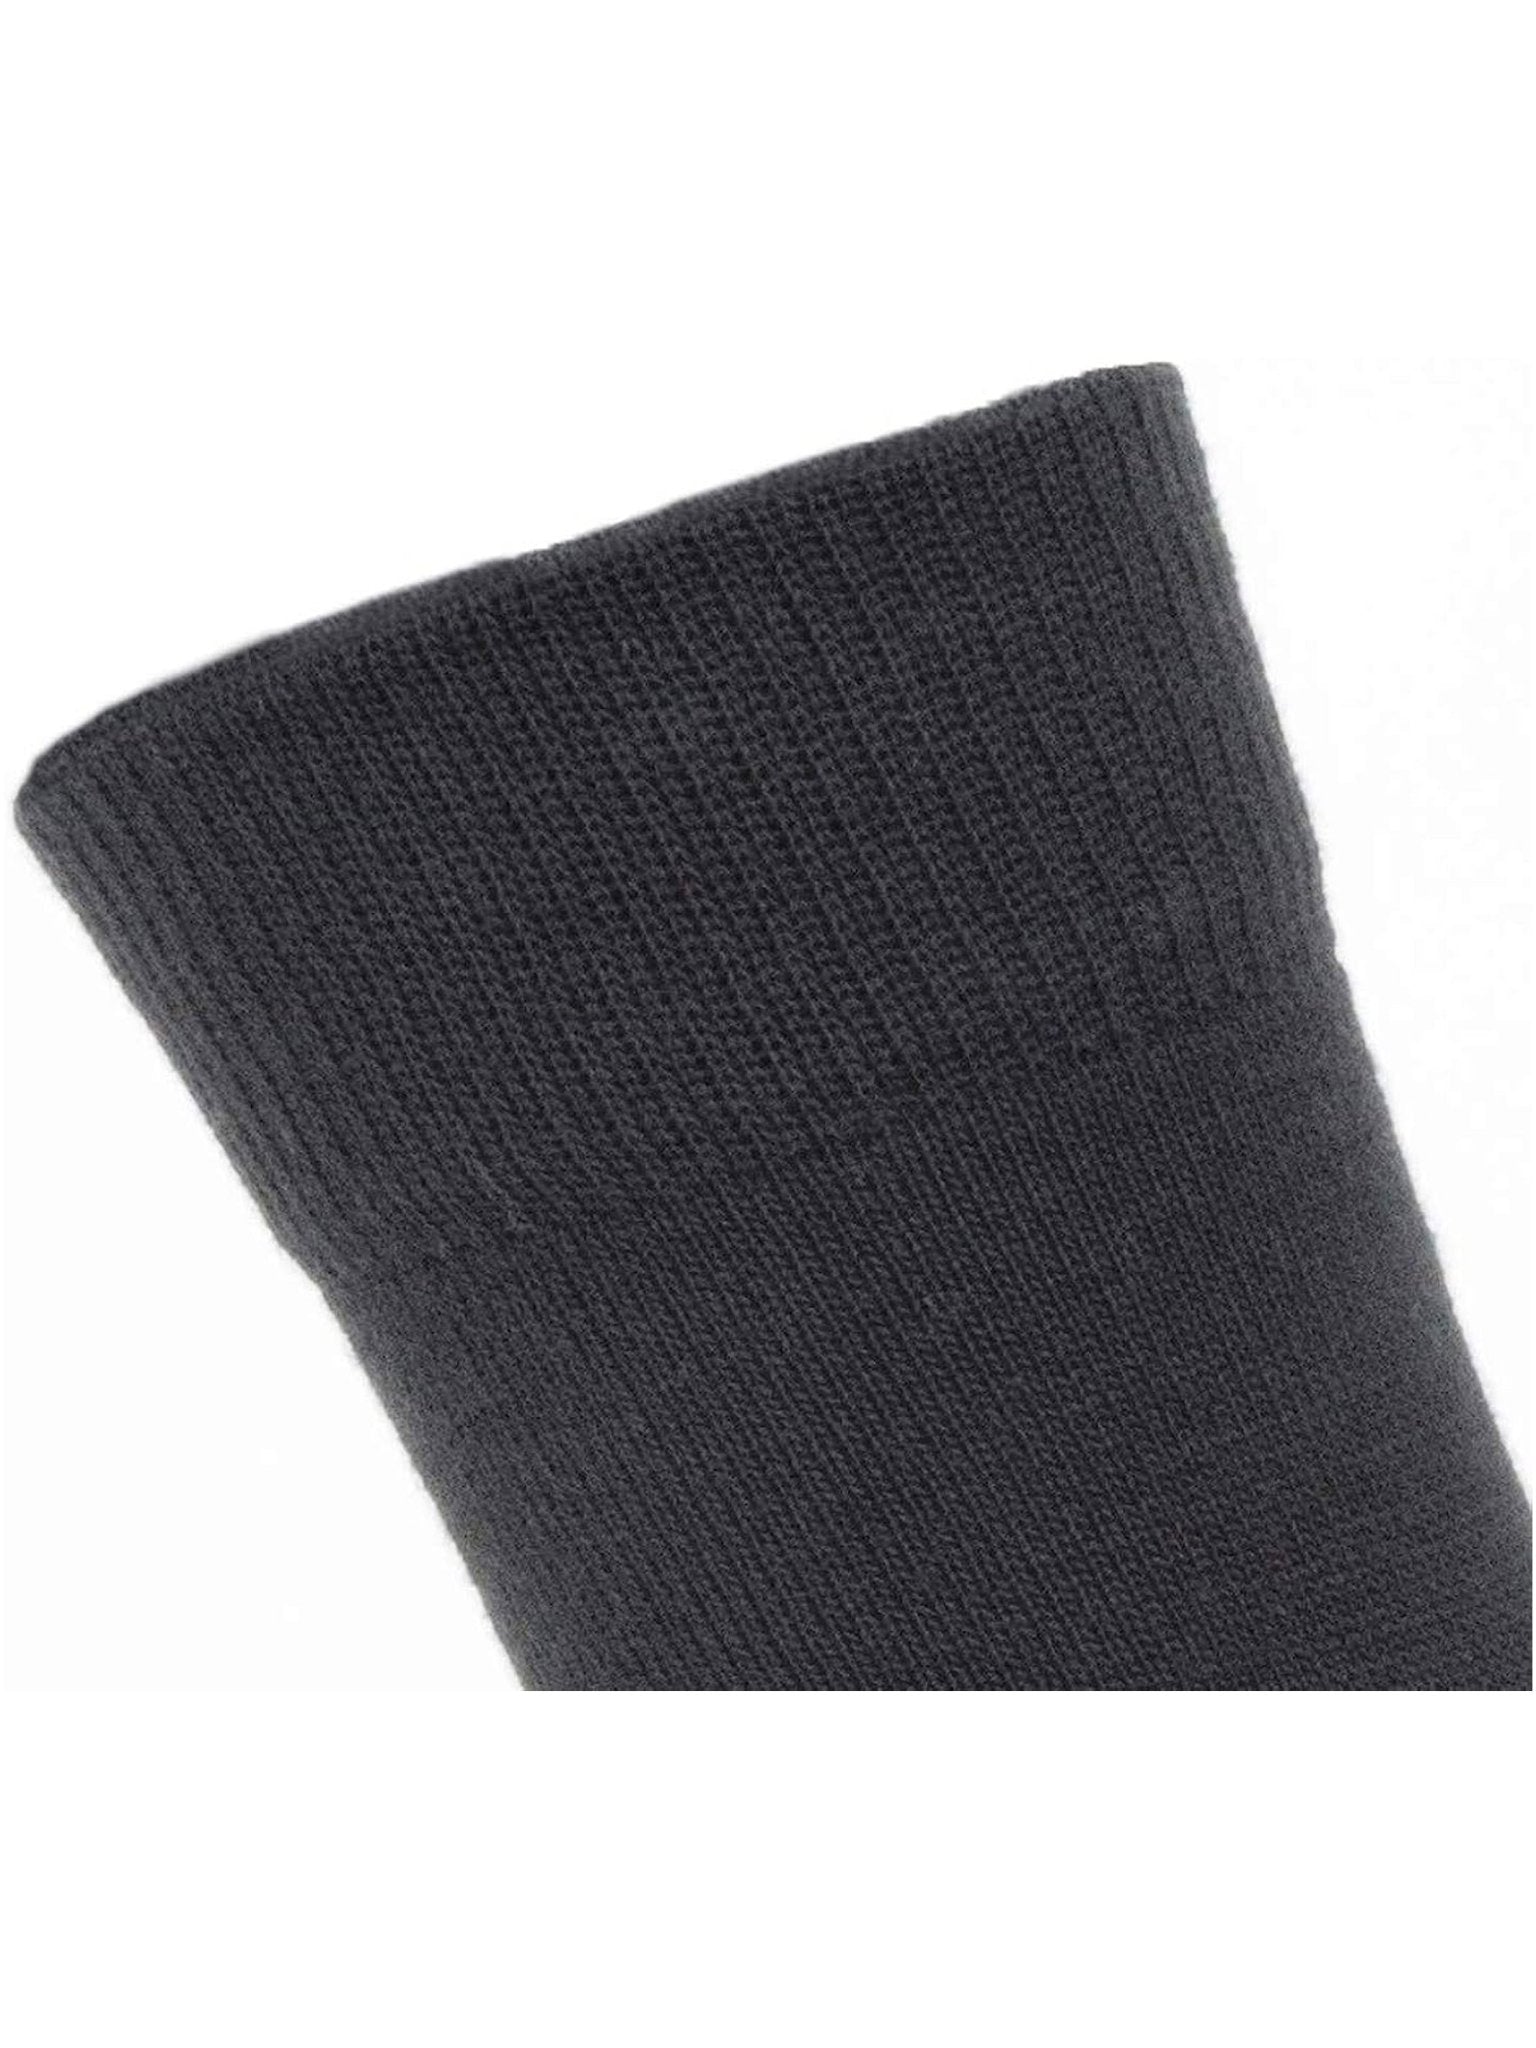 SealSkinz SealSkinz - Merino Socks / Solo Liner Sock Pair - Black Socks